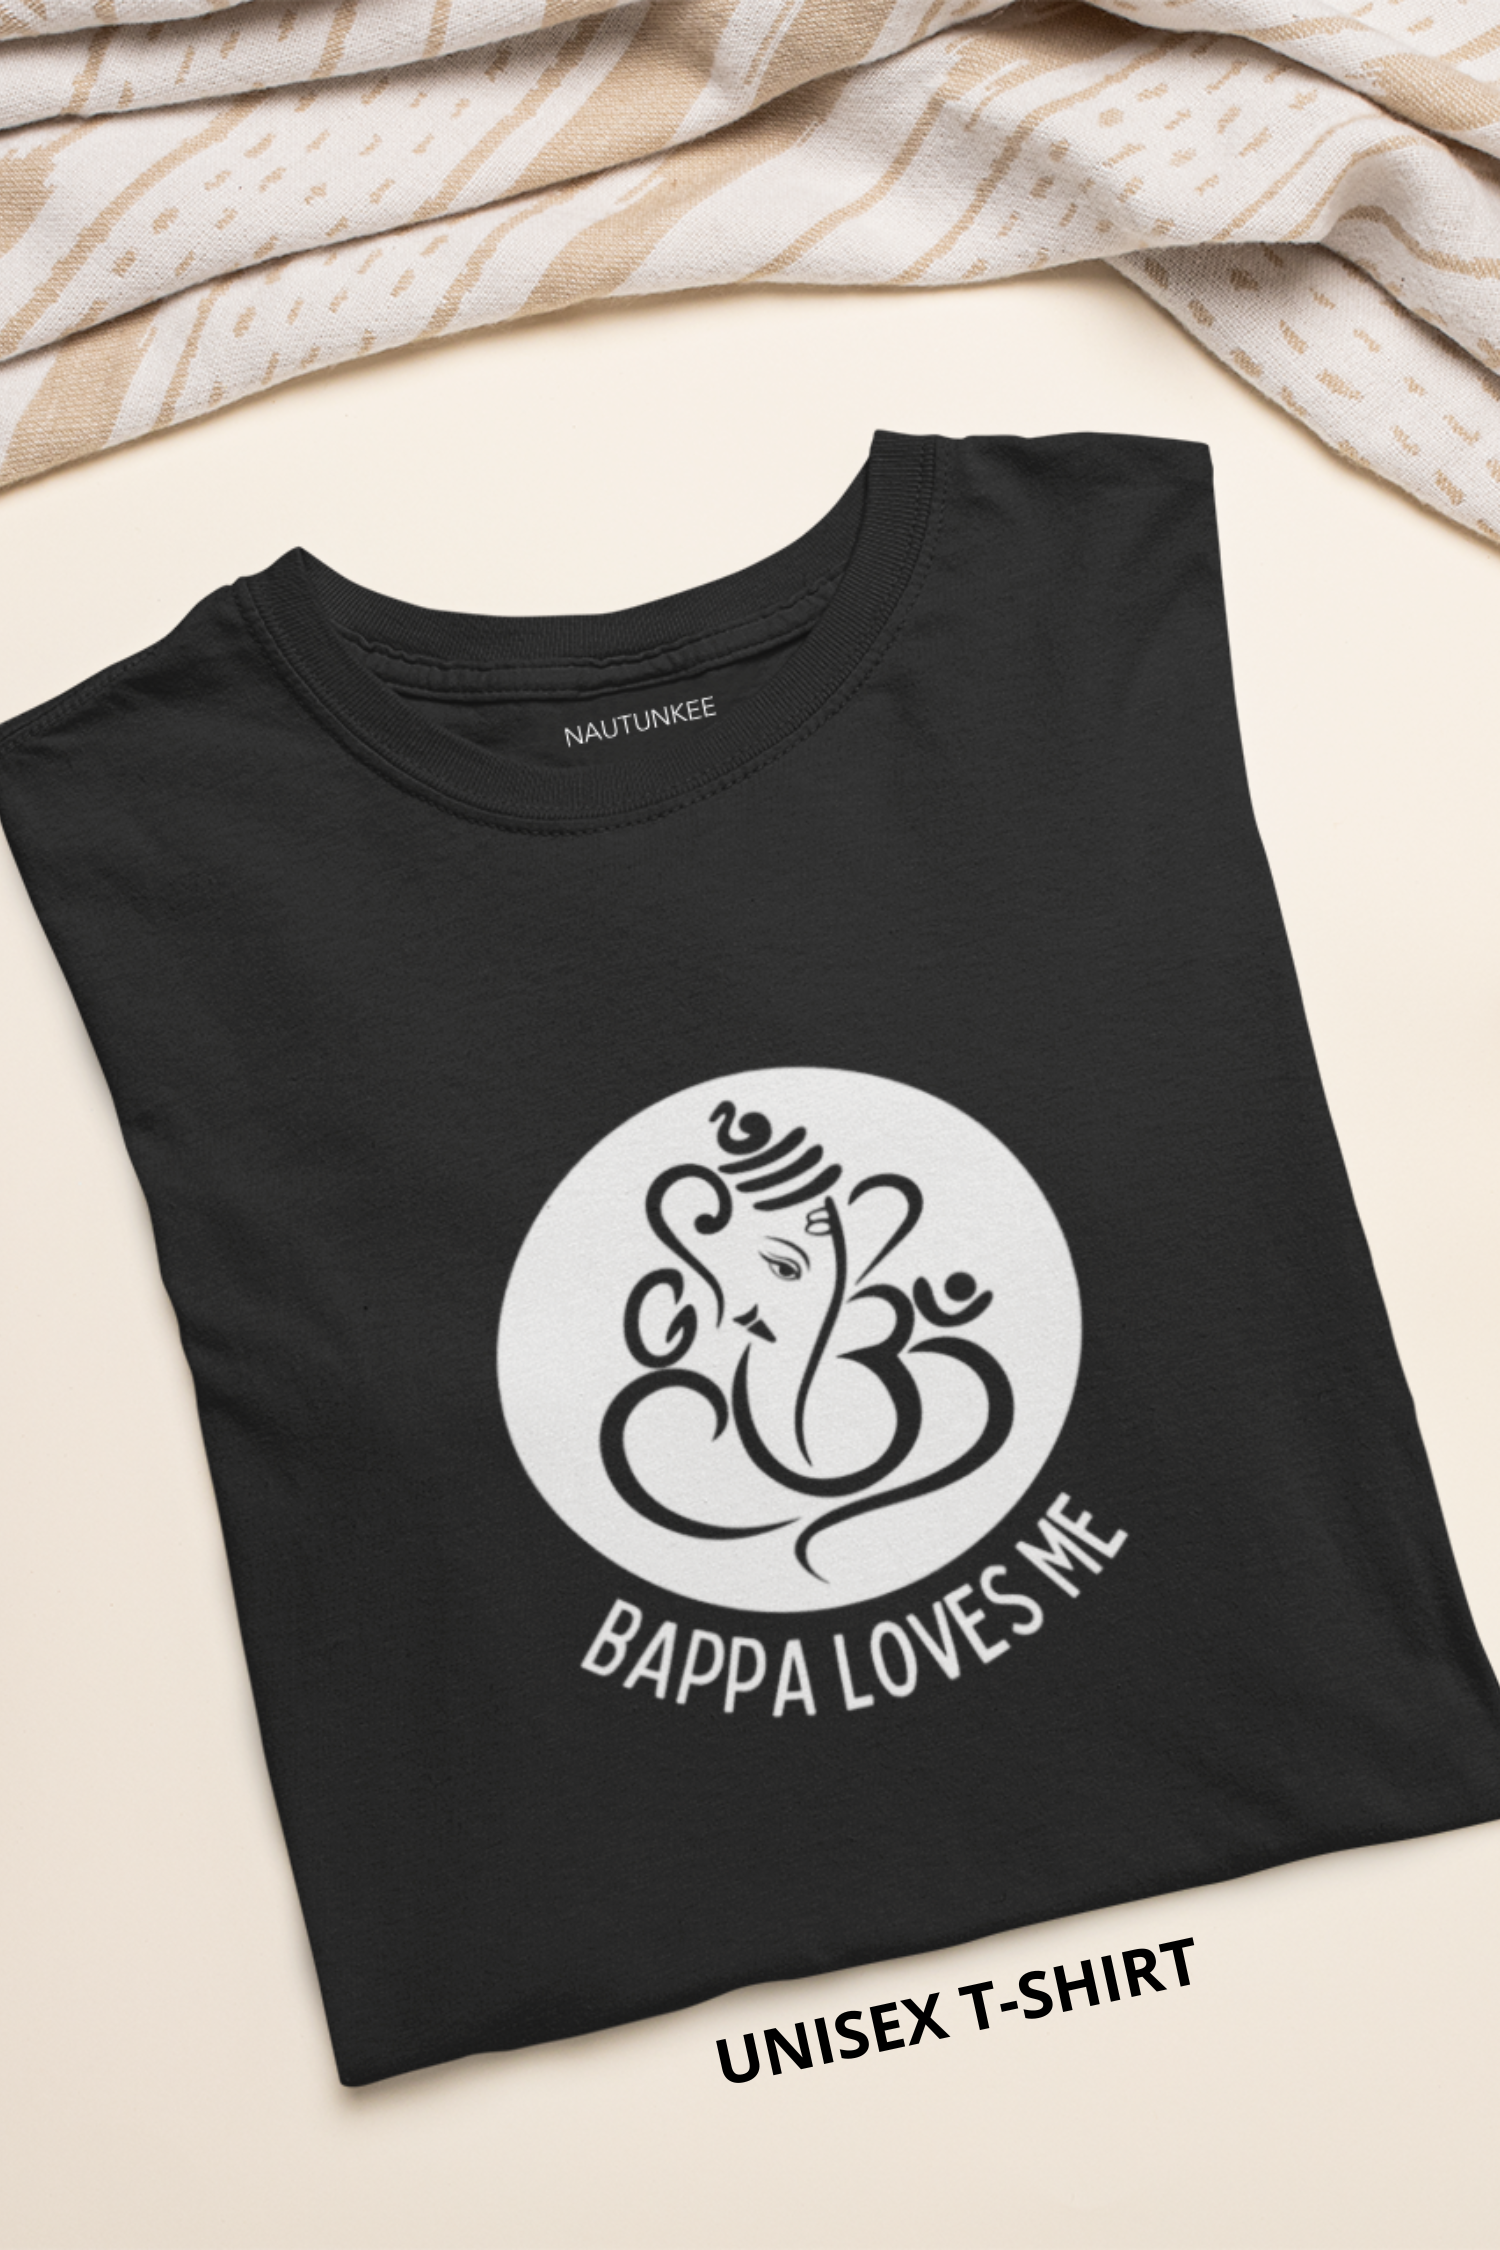 Ganpati Bappa T-Shirt - Nautunkee